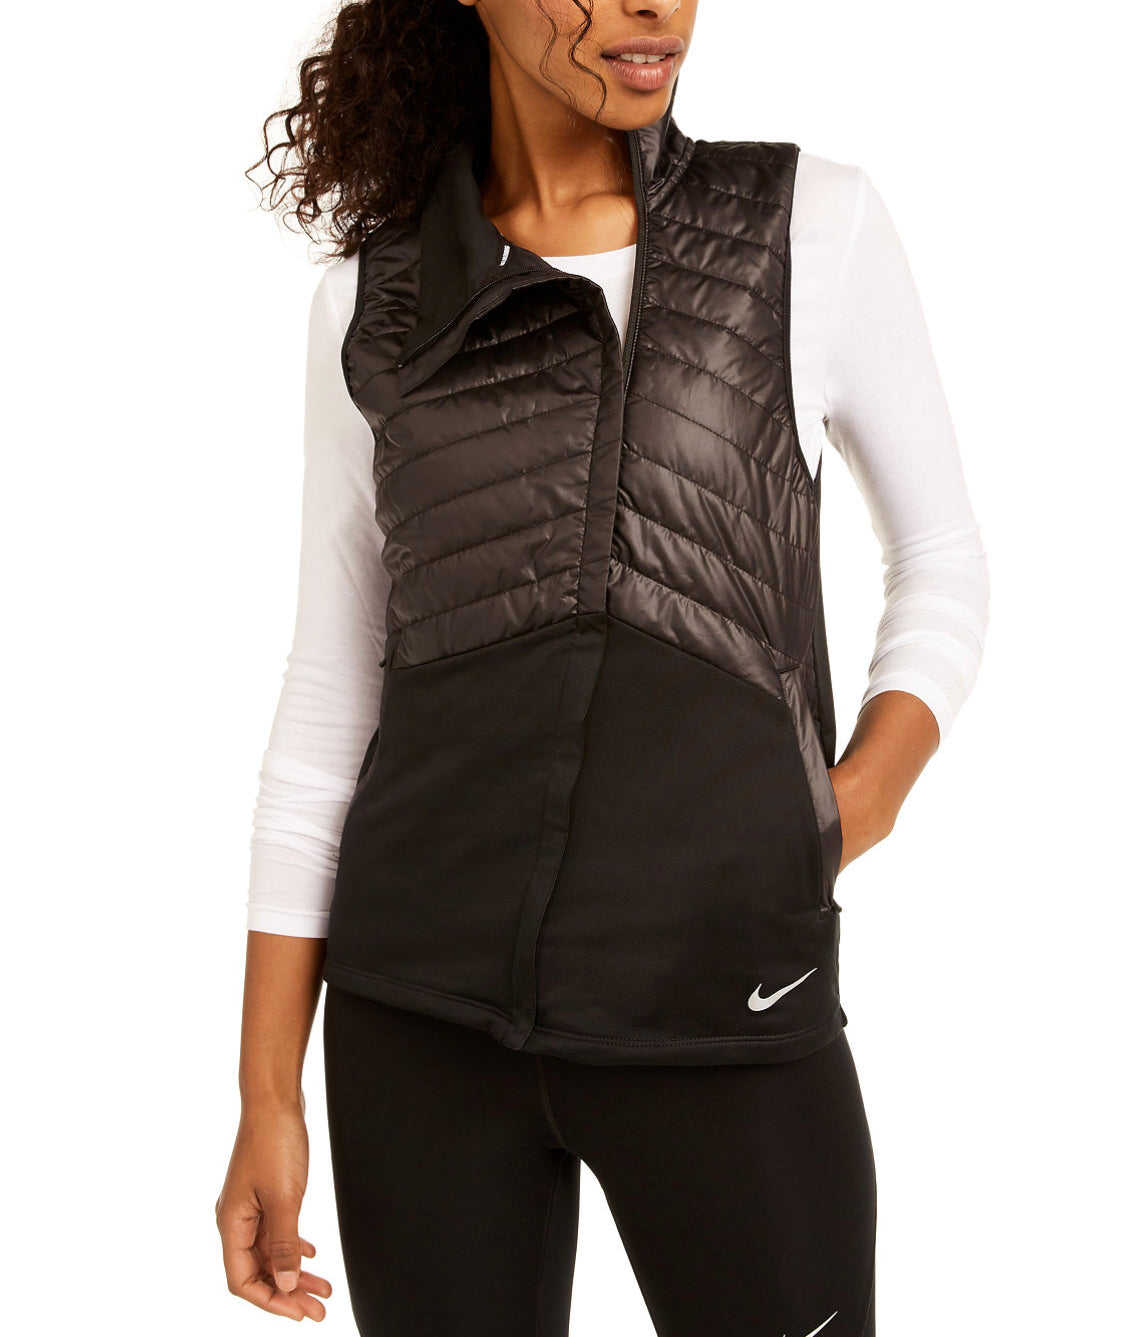 enestående Gør livet Kamel Nike Women's Essential Quilted Running Vest Black M NWT! $90 –  DesignerBrandBOX